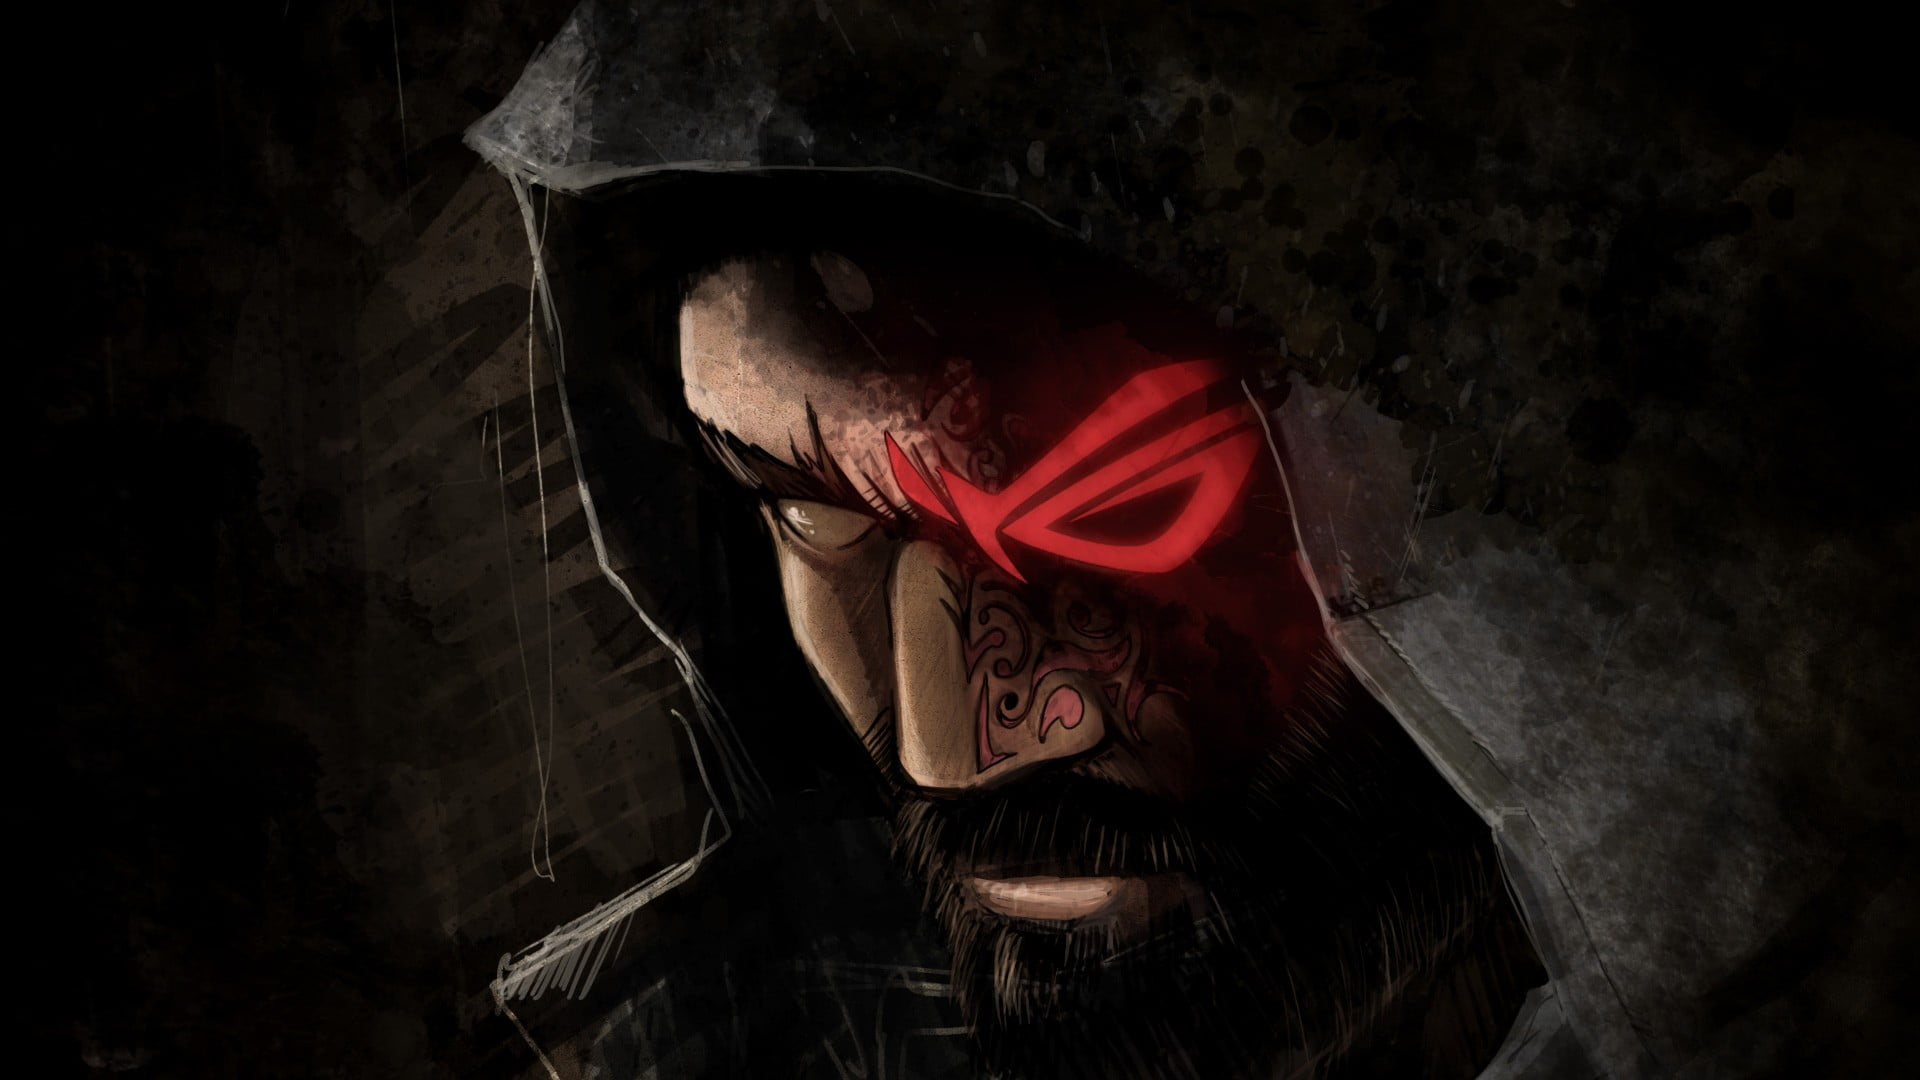 Man wearing hood wallpaper, Republic of Gamers, ASUS, fantasy art